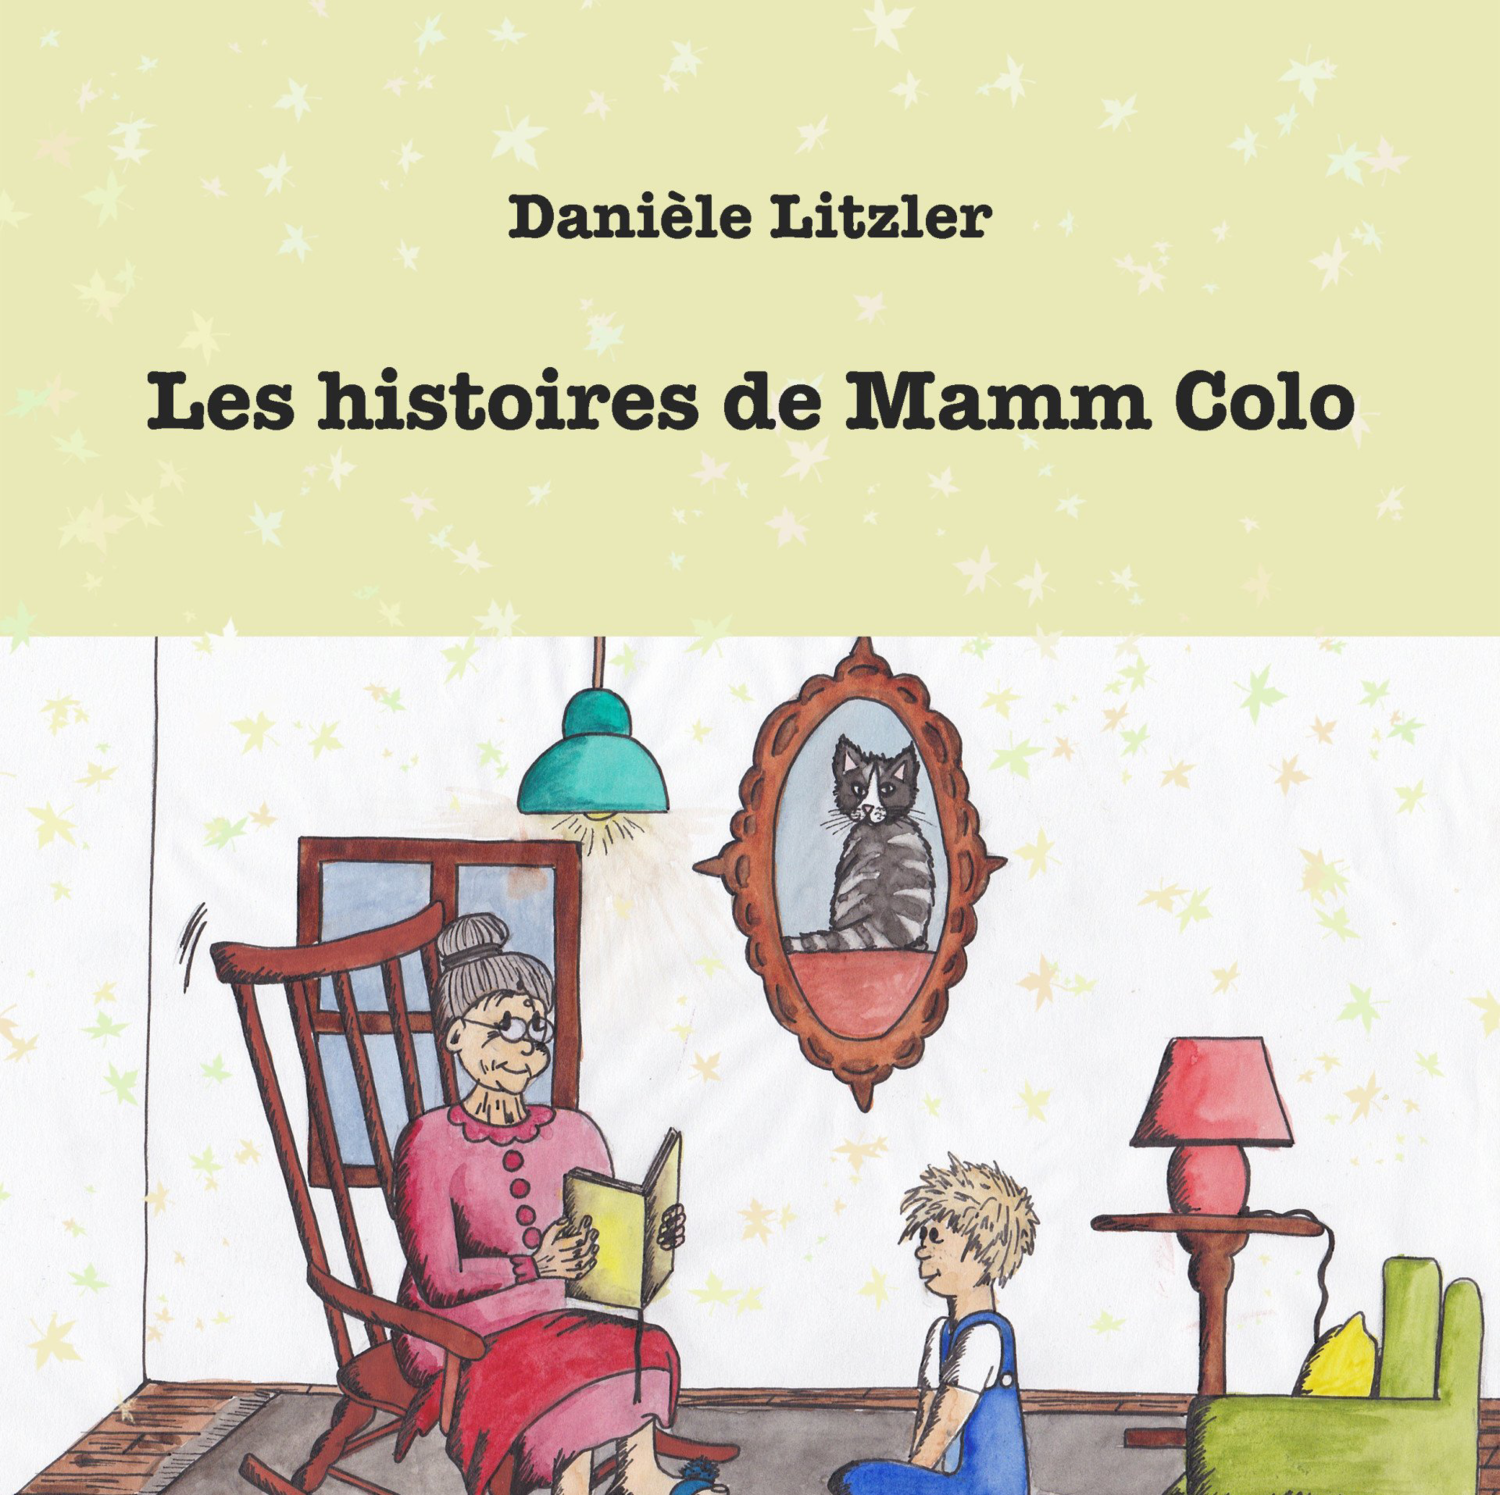 Les histoires de Mamm Colo